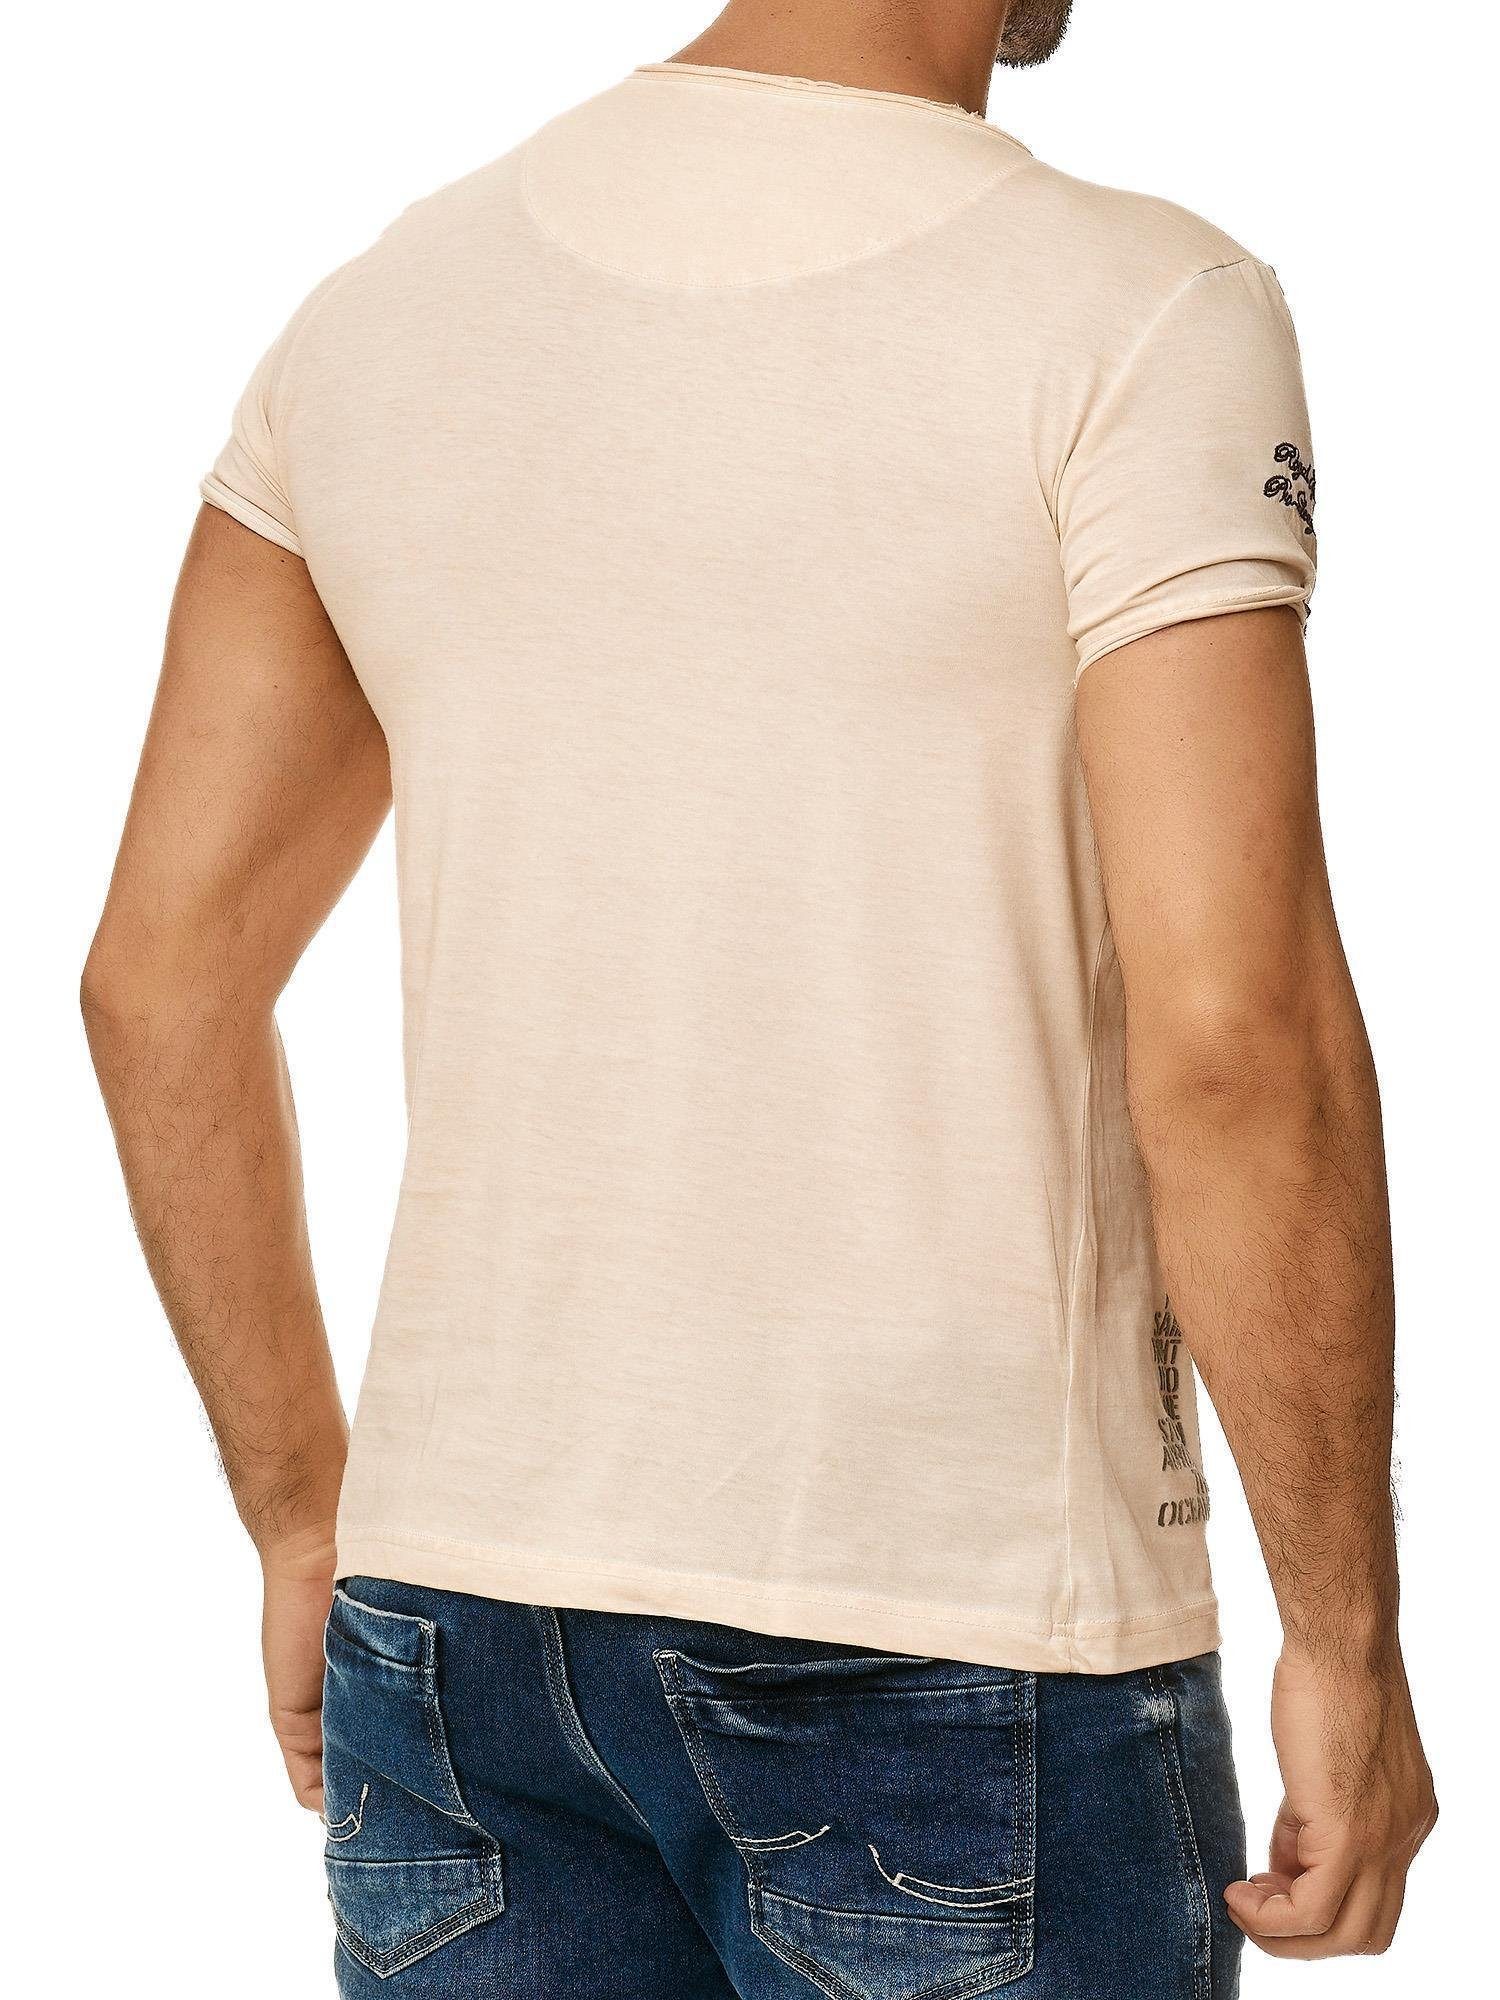 dezentem 4060 Ölwaschung Tazzio stone & T-Shirt V-Shirt außergewöhliches in Used Look